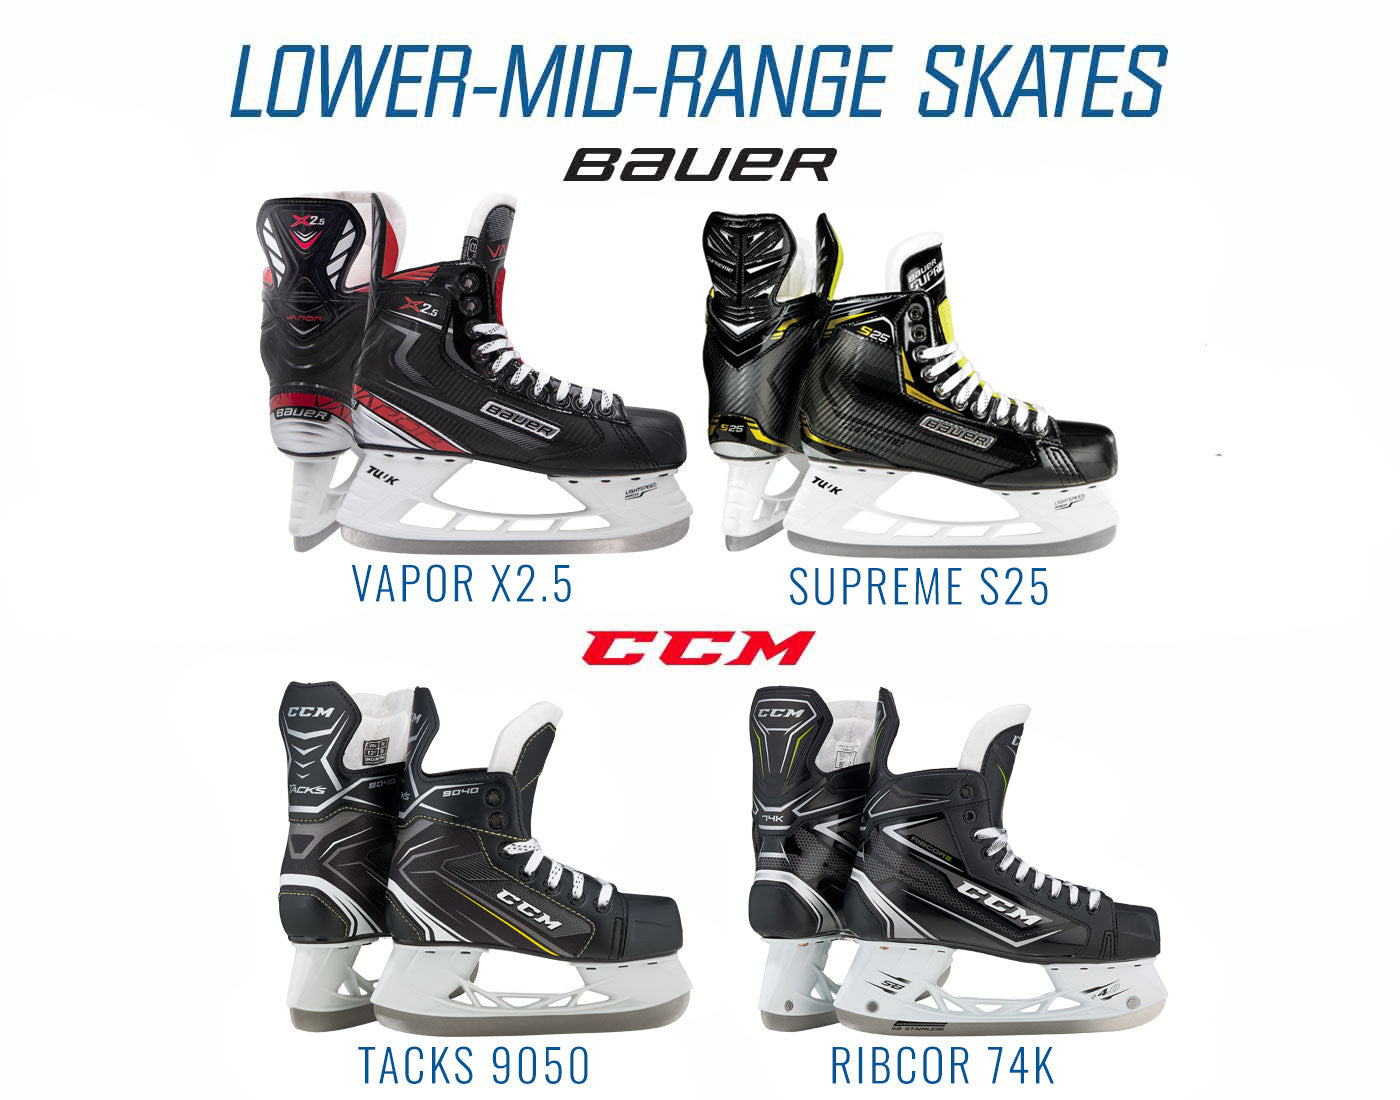 Lower-Mid-Range Skates